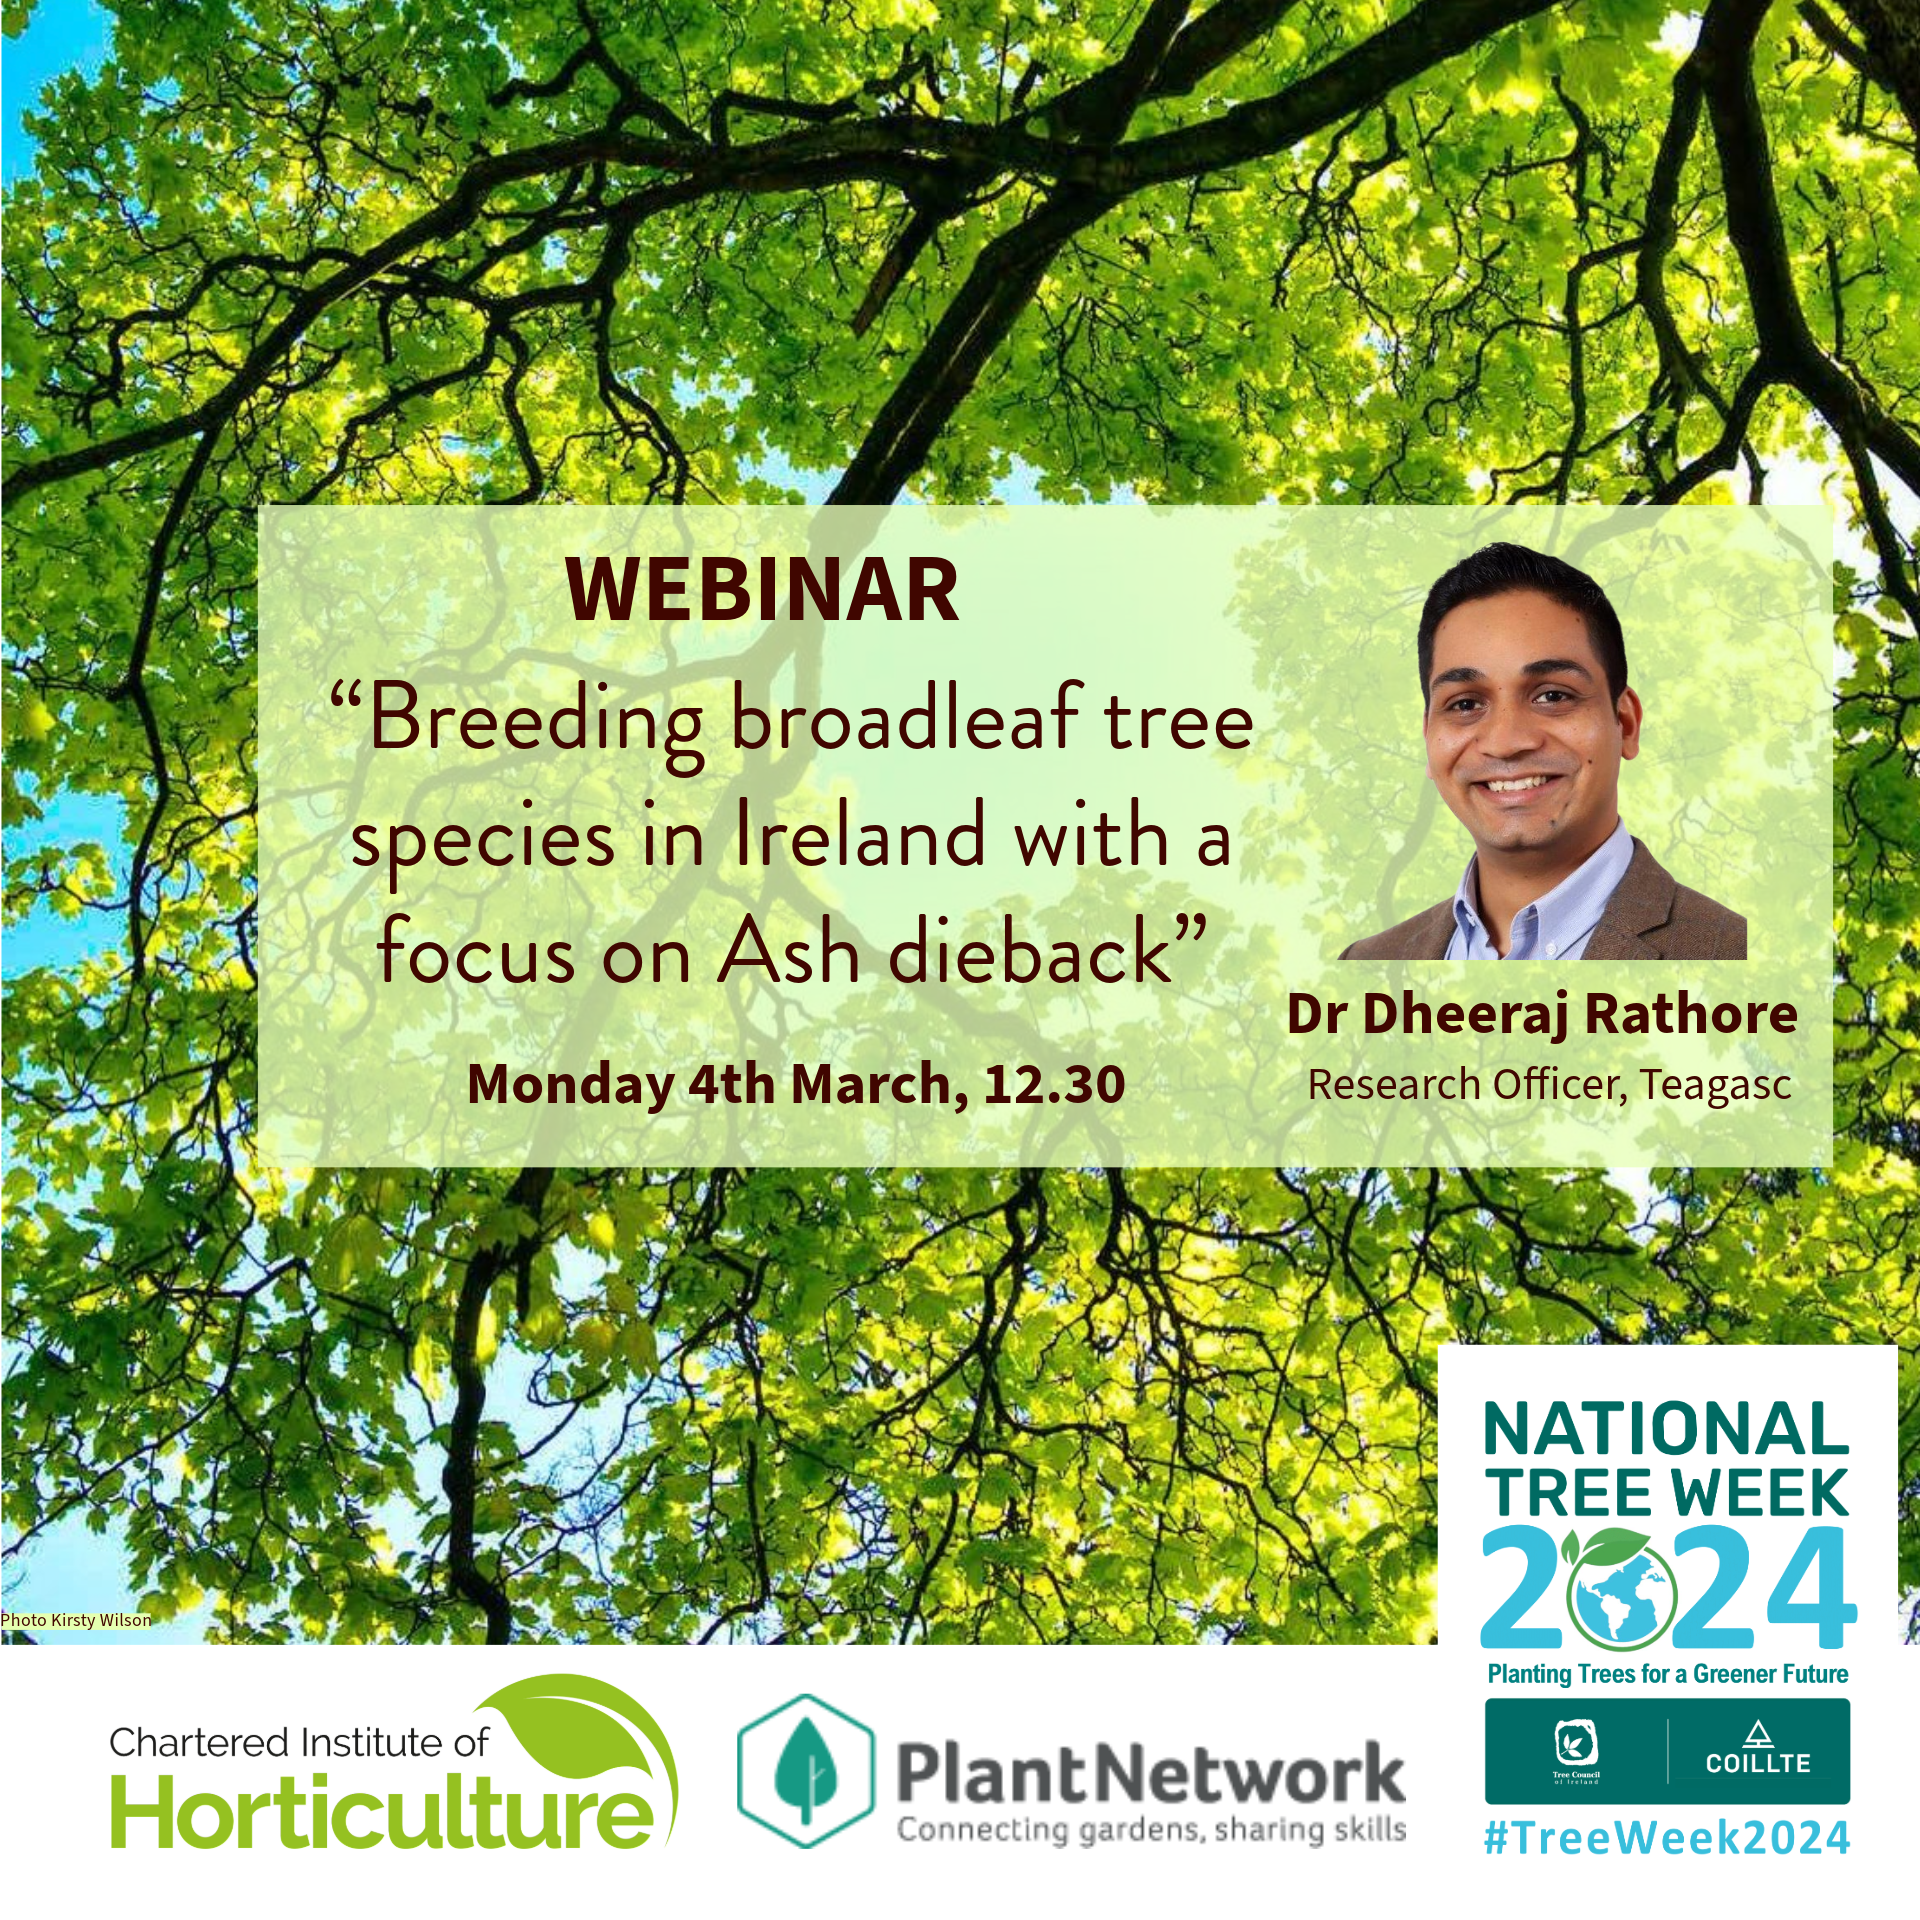 National Tree Week Webinar - Dr Dheeraj Rathore